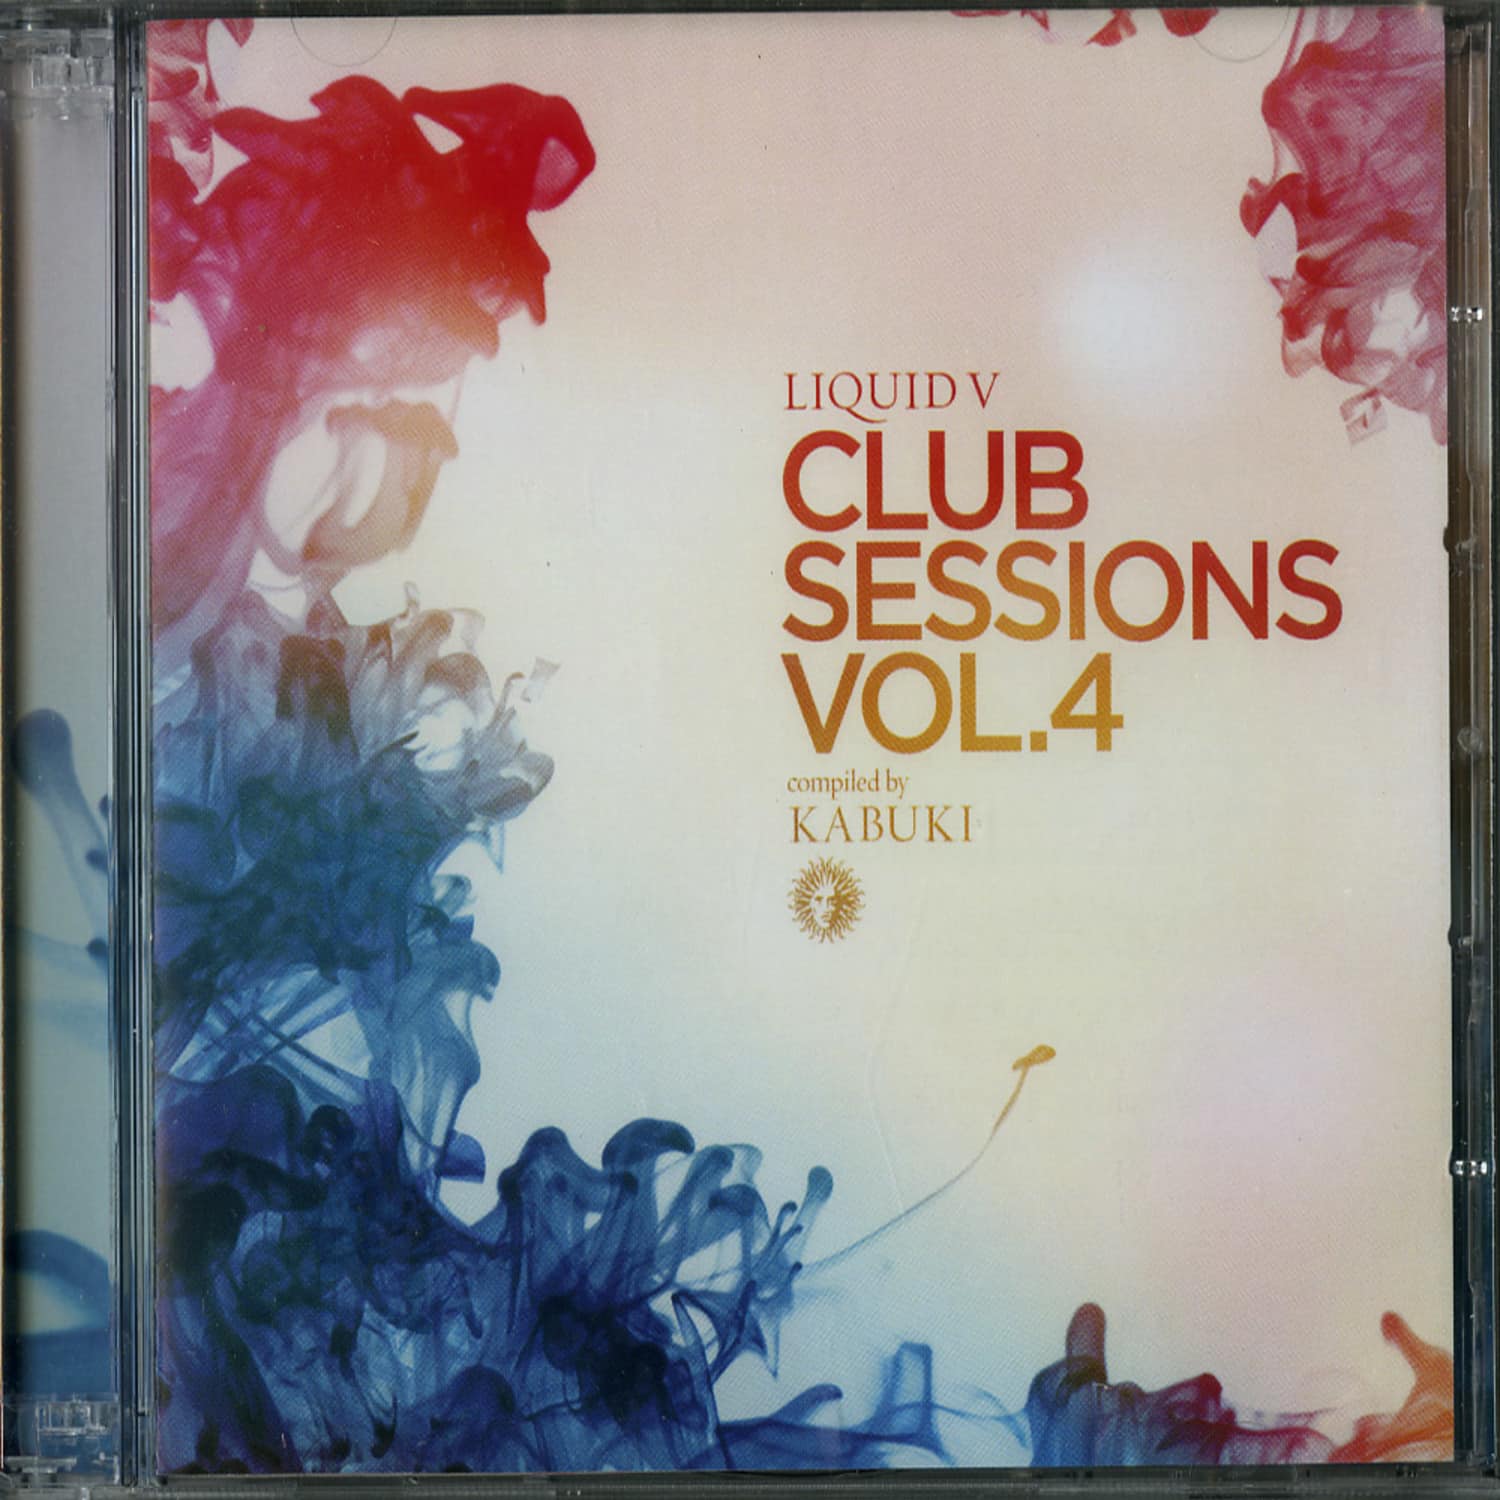 Various Artists - LIQUID V CLUB SESSIONS VOL. 4 